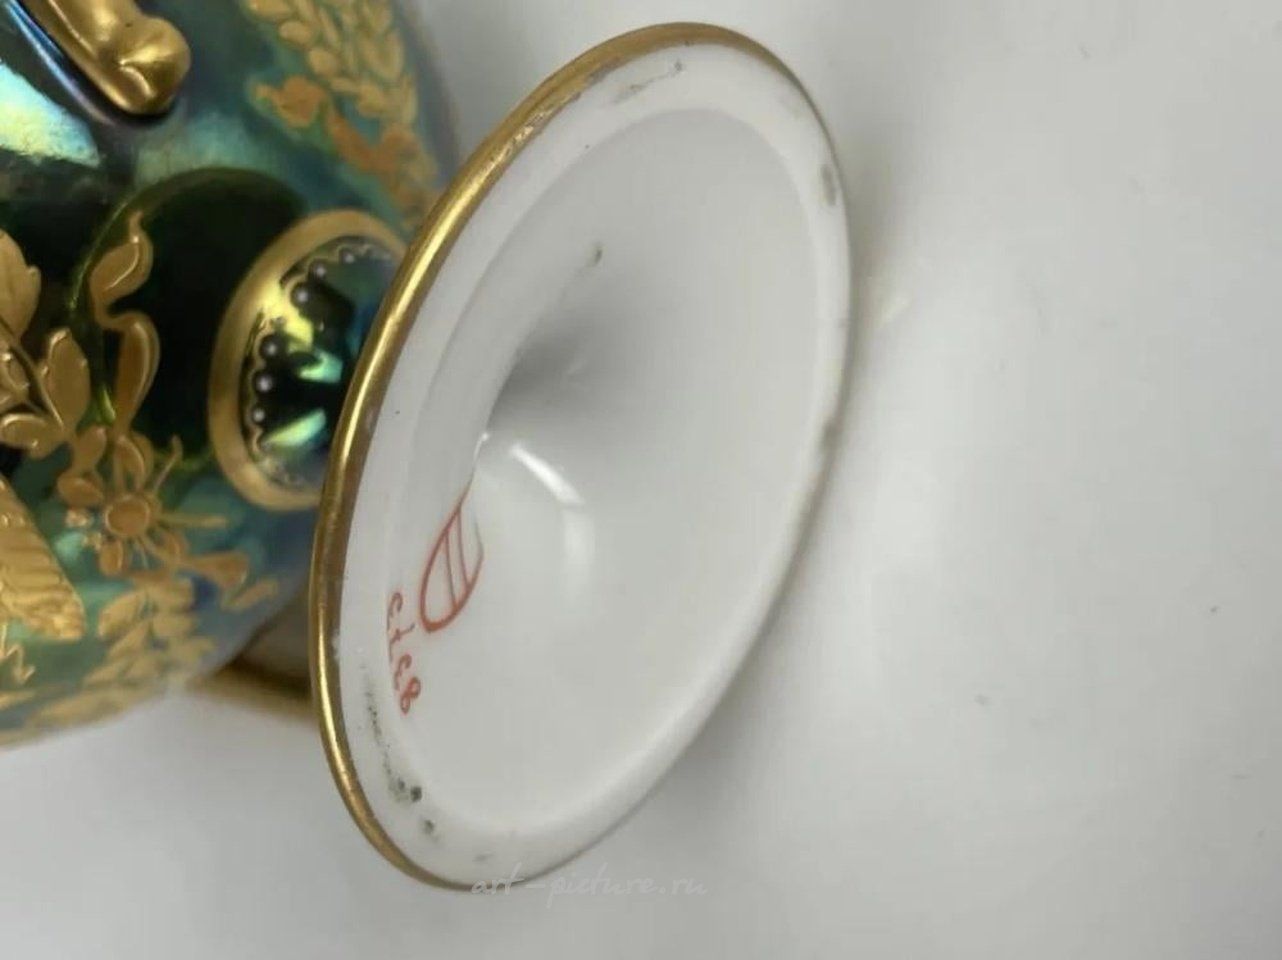 Royal Vienna , Фарфоровая чашка и блюдце в стиле Наполеона, примерно 1900 год. Размеры идеальны. Оценка: 1500-2000 долларов.